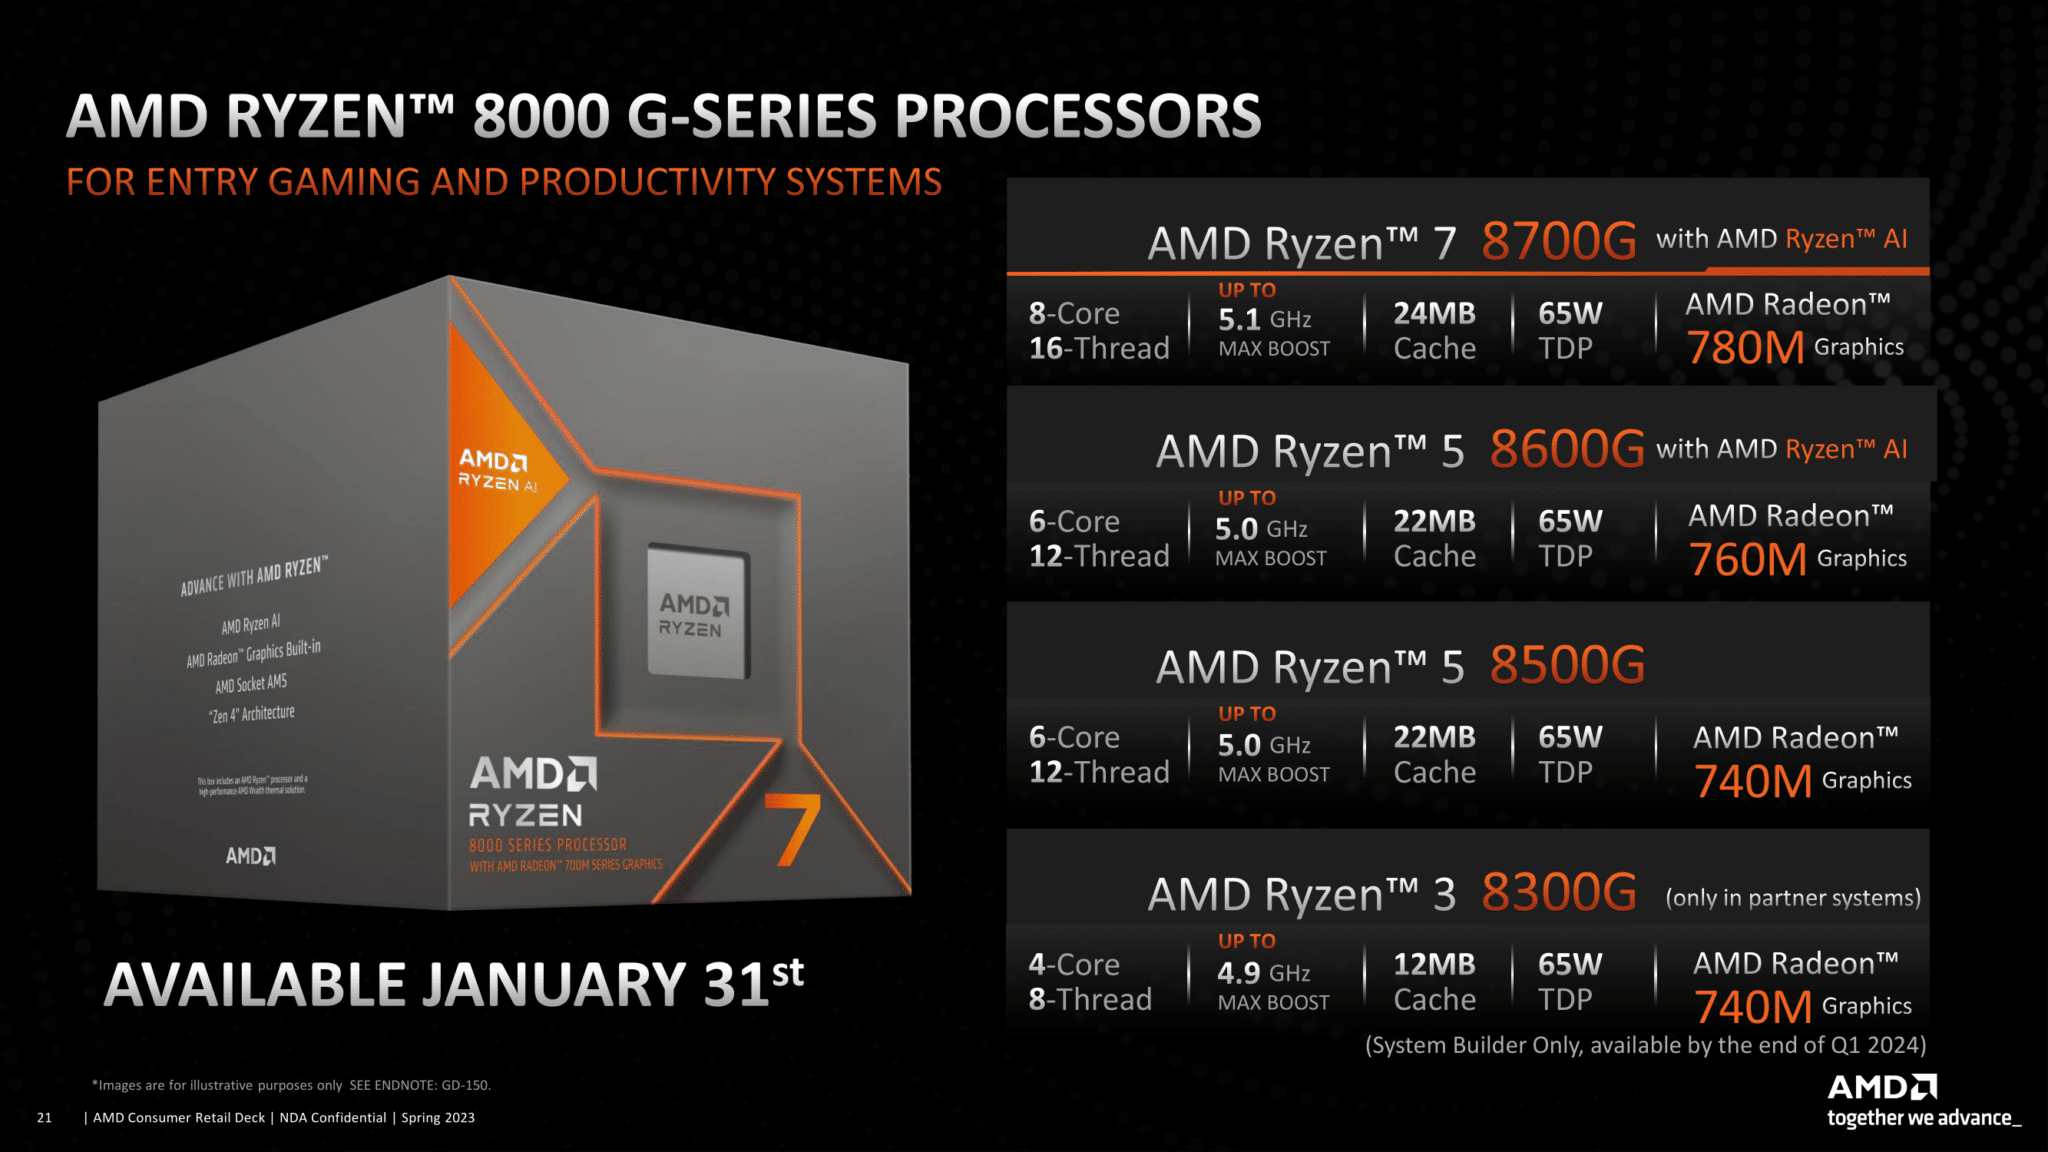 AMD تكشف رسميًا عن سلسلة المعالجات المكتبية Ryzen 8000G